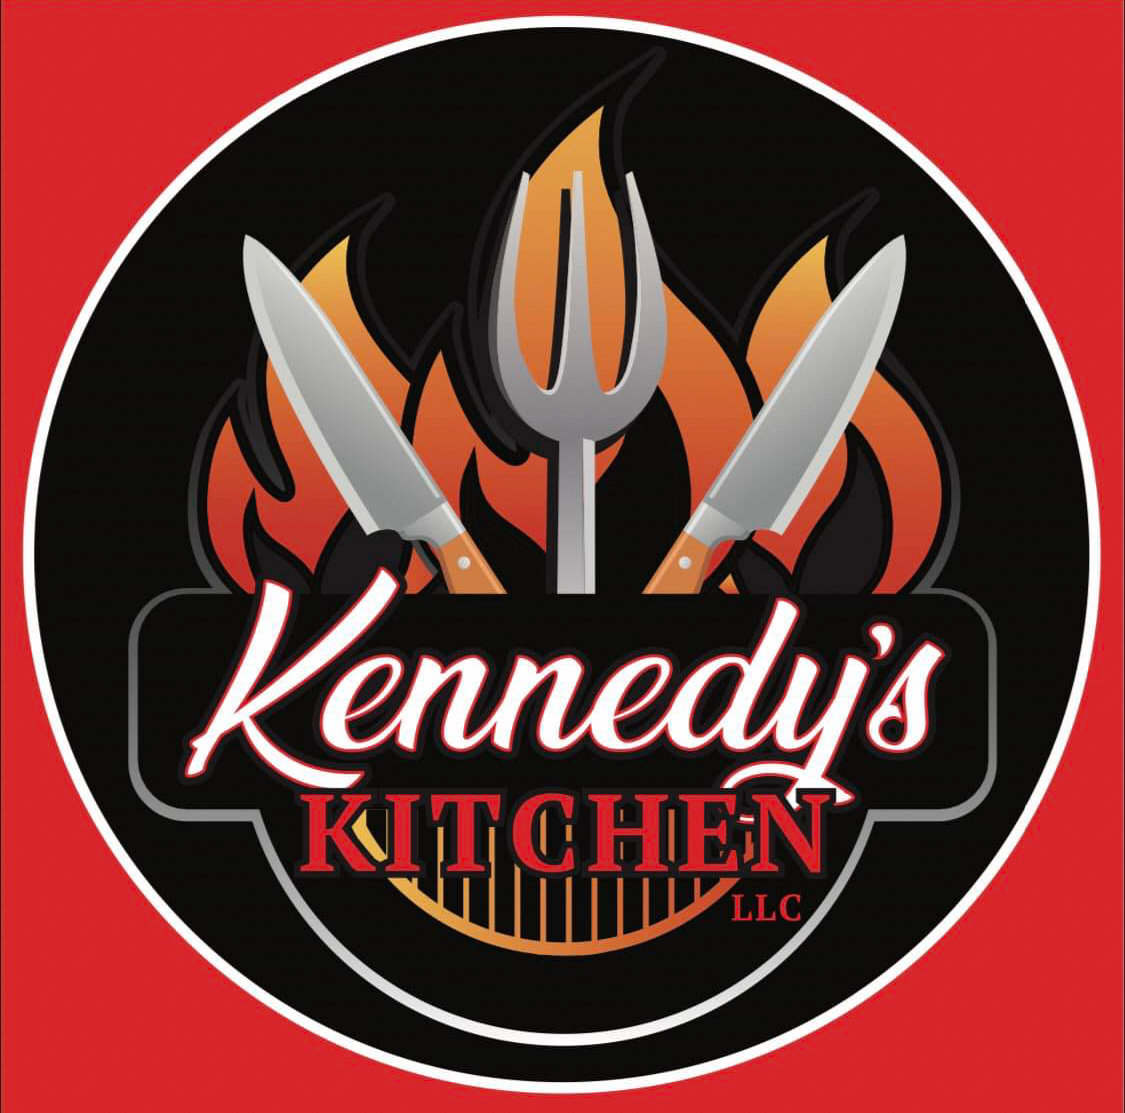 Kennedy's Kitchen Food Truck